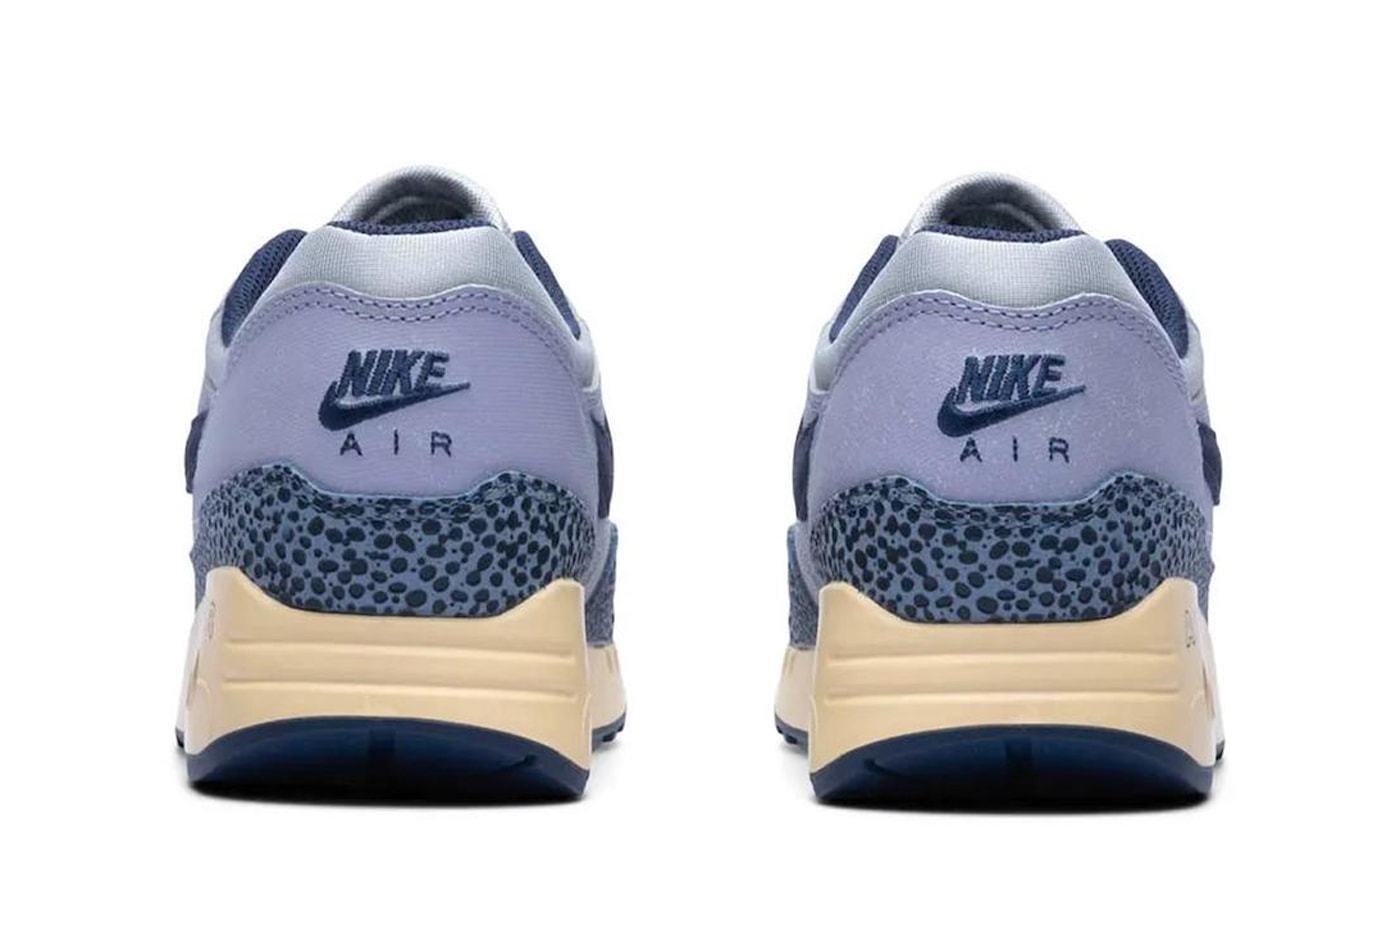 Nike air max 1 blue safari dv7525 001 june 16 170 usd release info date price